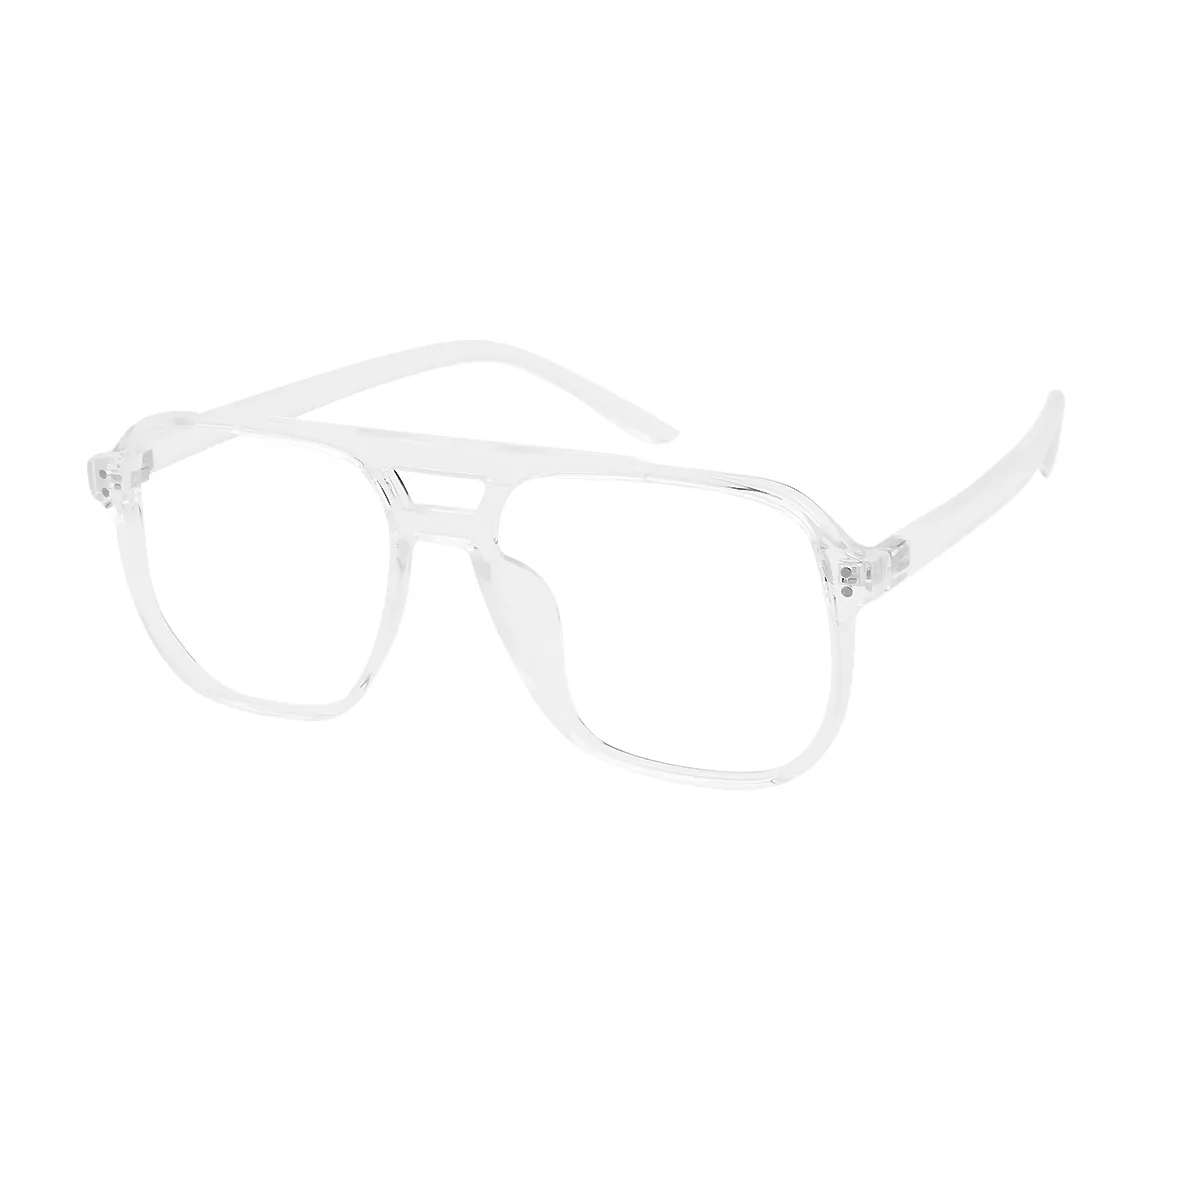 Balfe - Aviator Translucent Glasses for Men & Women - EFE